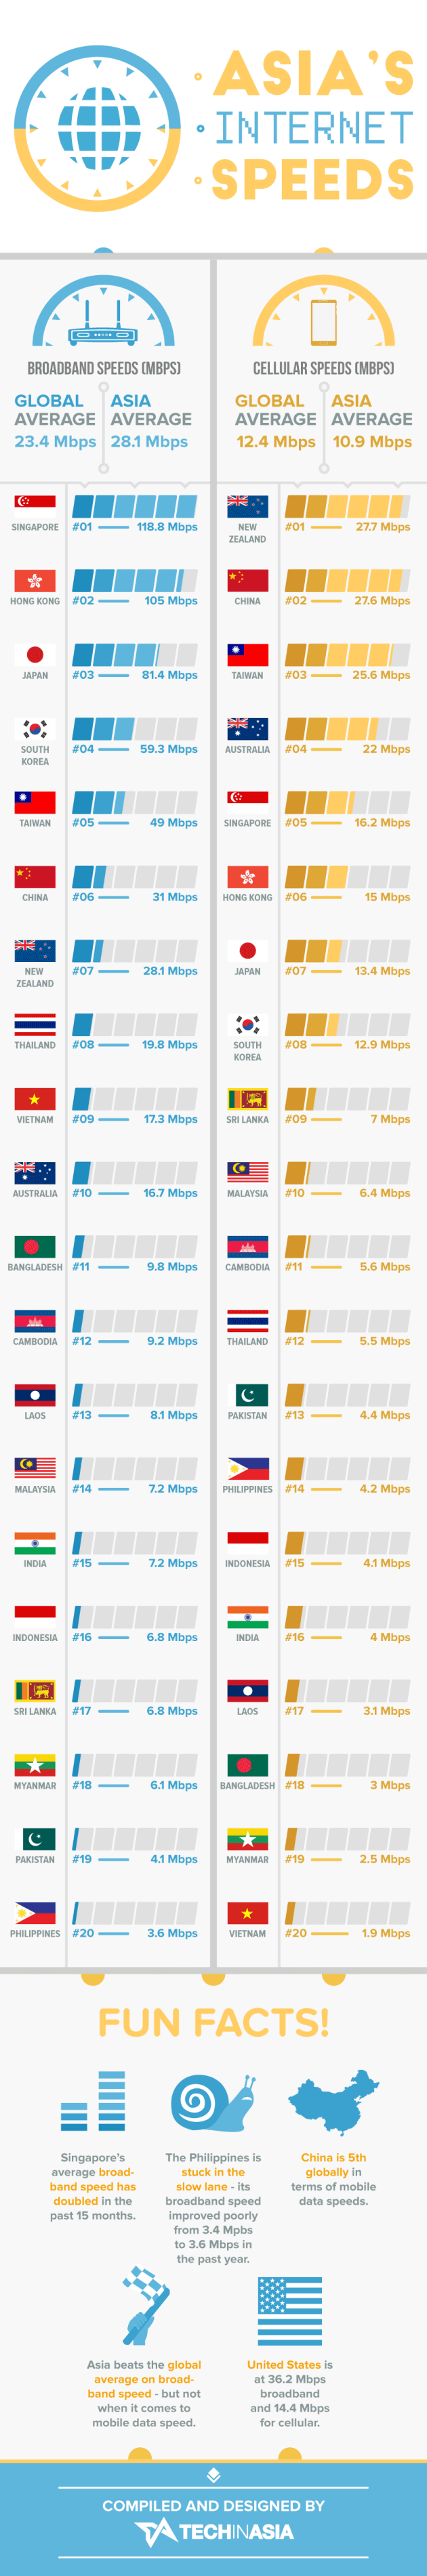 Internet Speeds in India, Asia